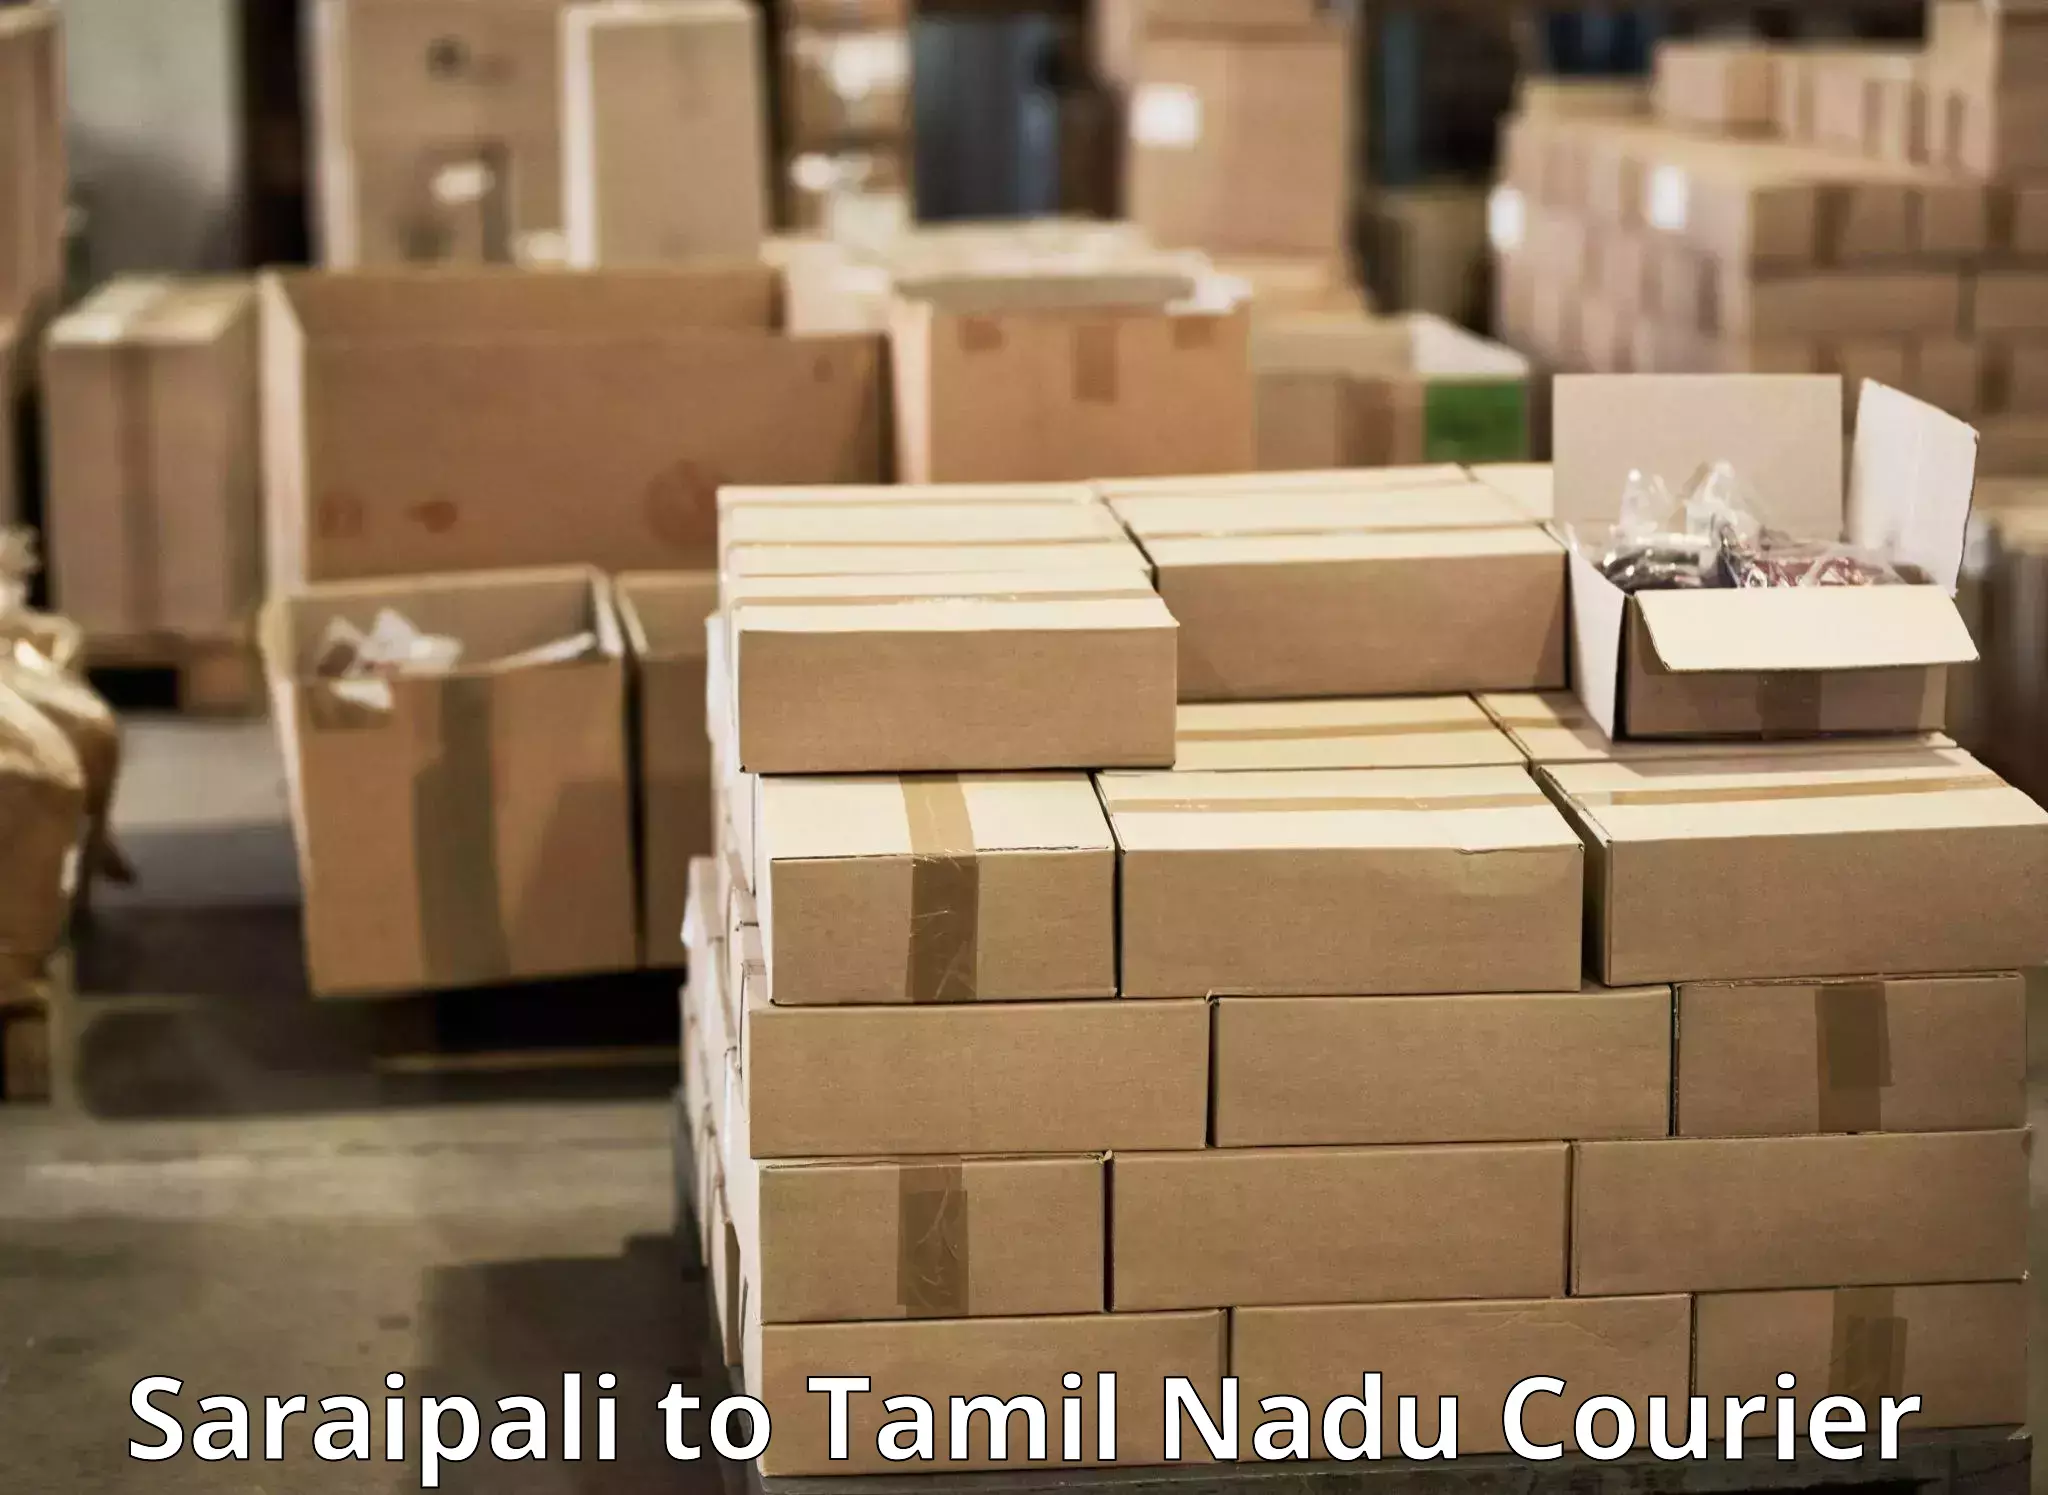 Courier service innovation Saraipali to Thiruvarur